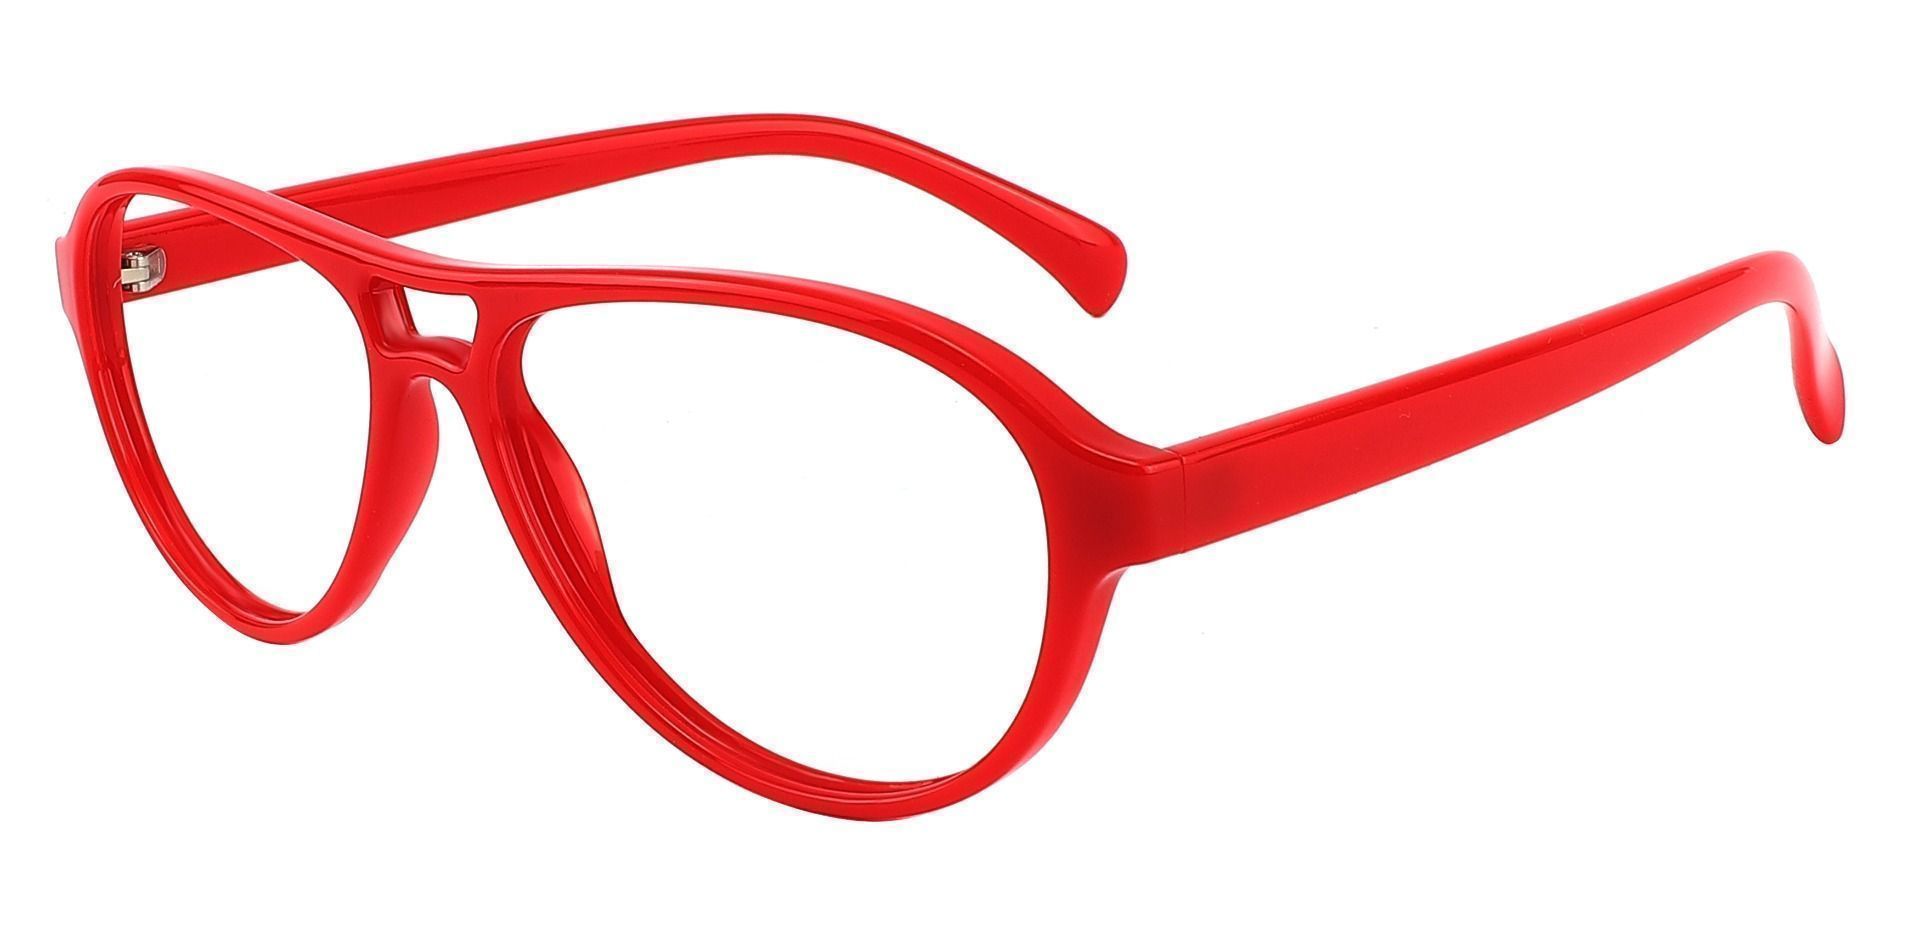 Sosa Aviator Prescription Glasses - Red